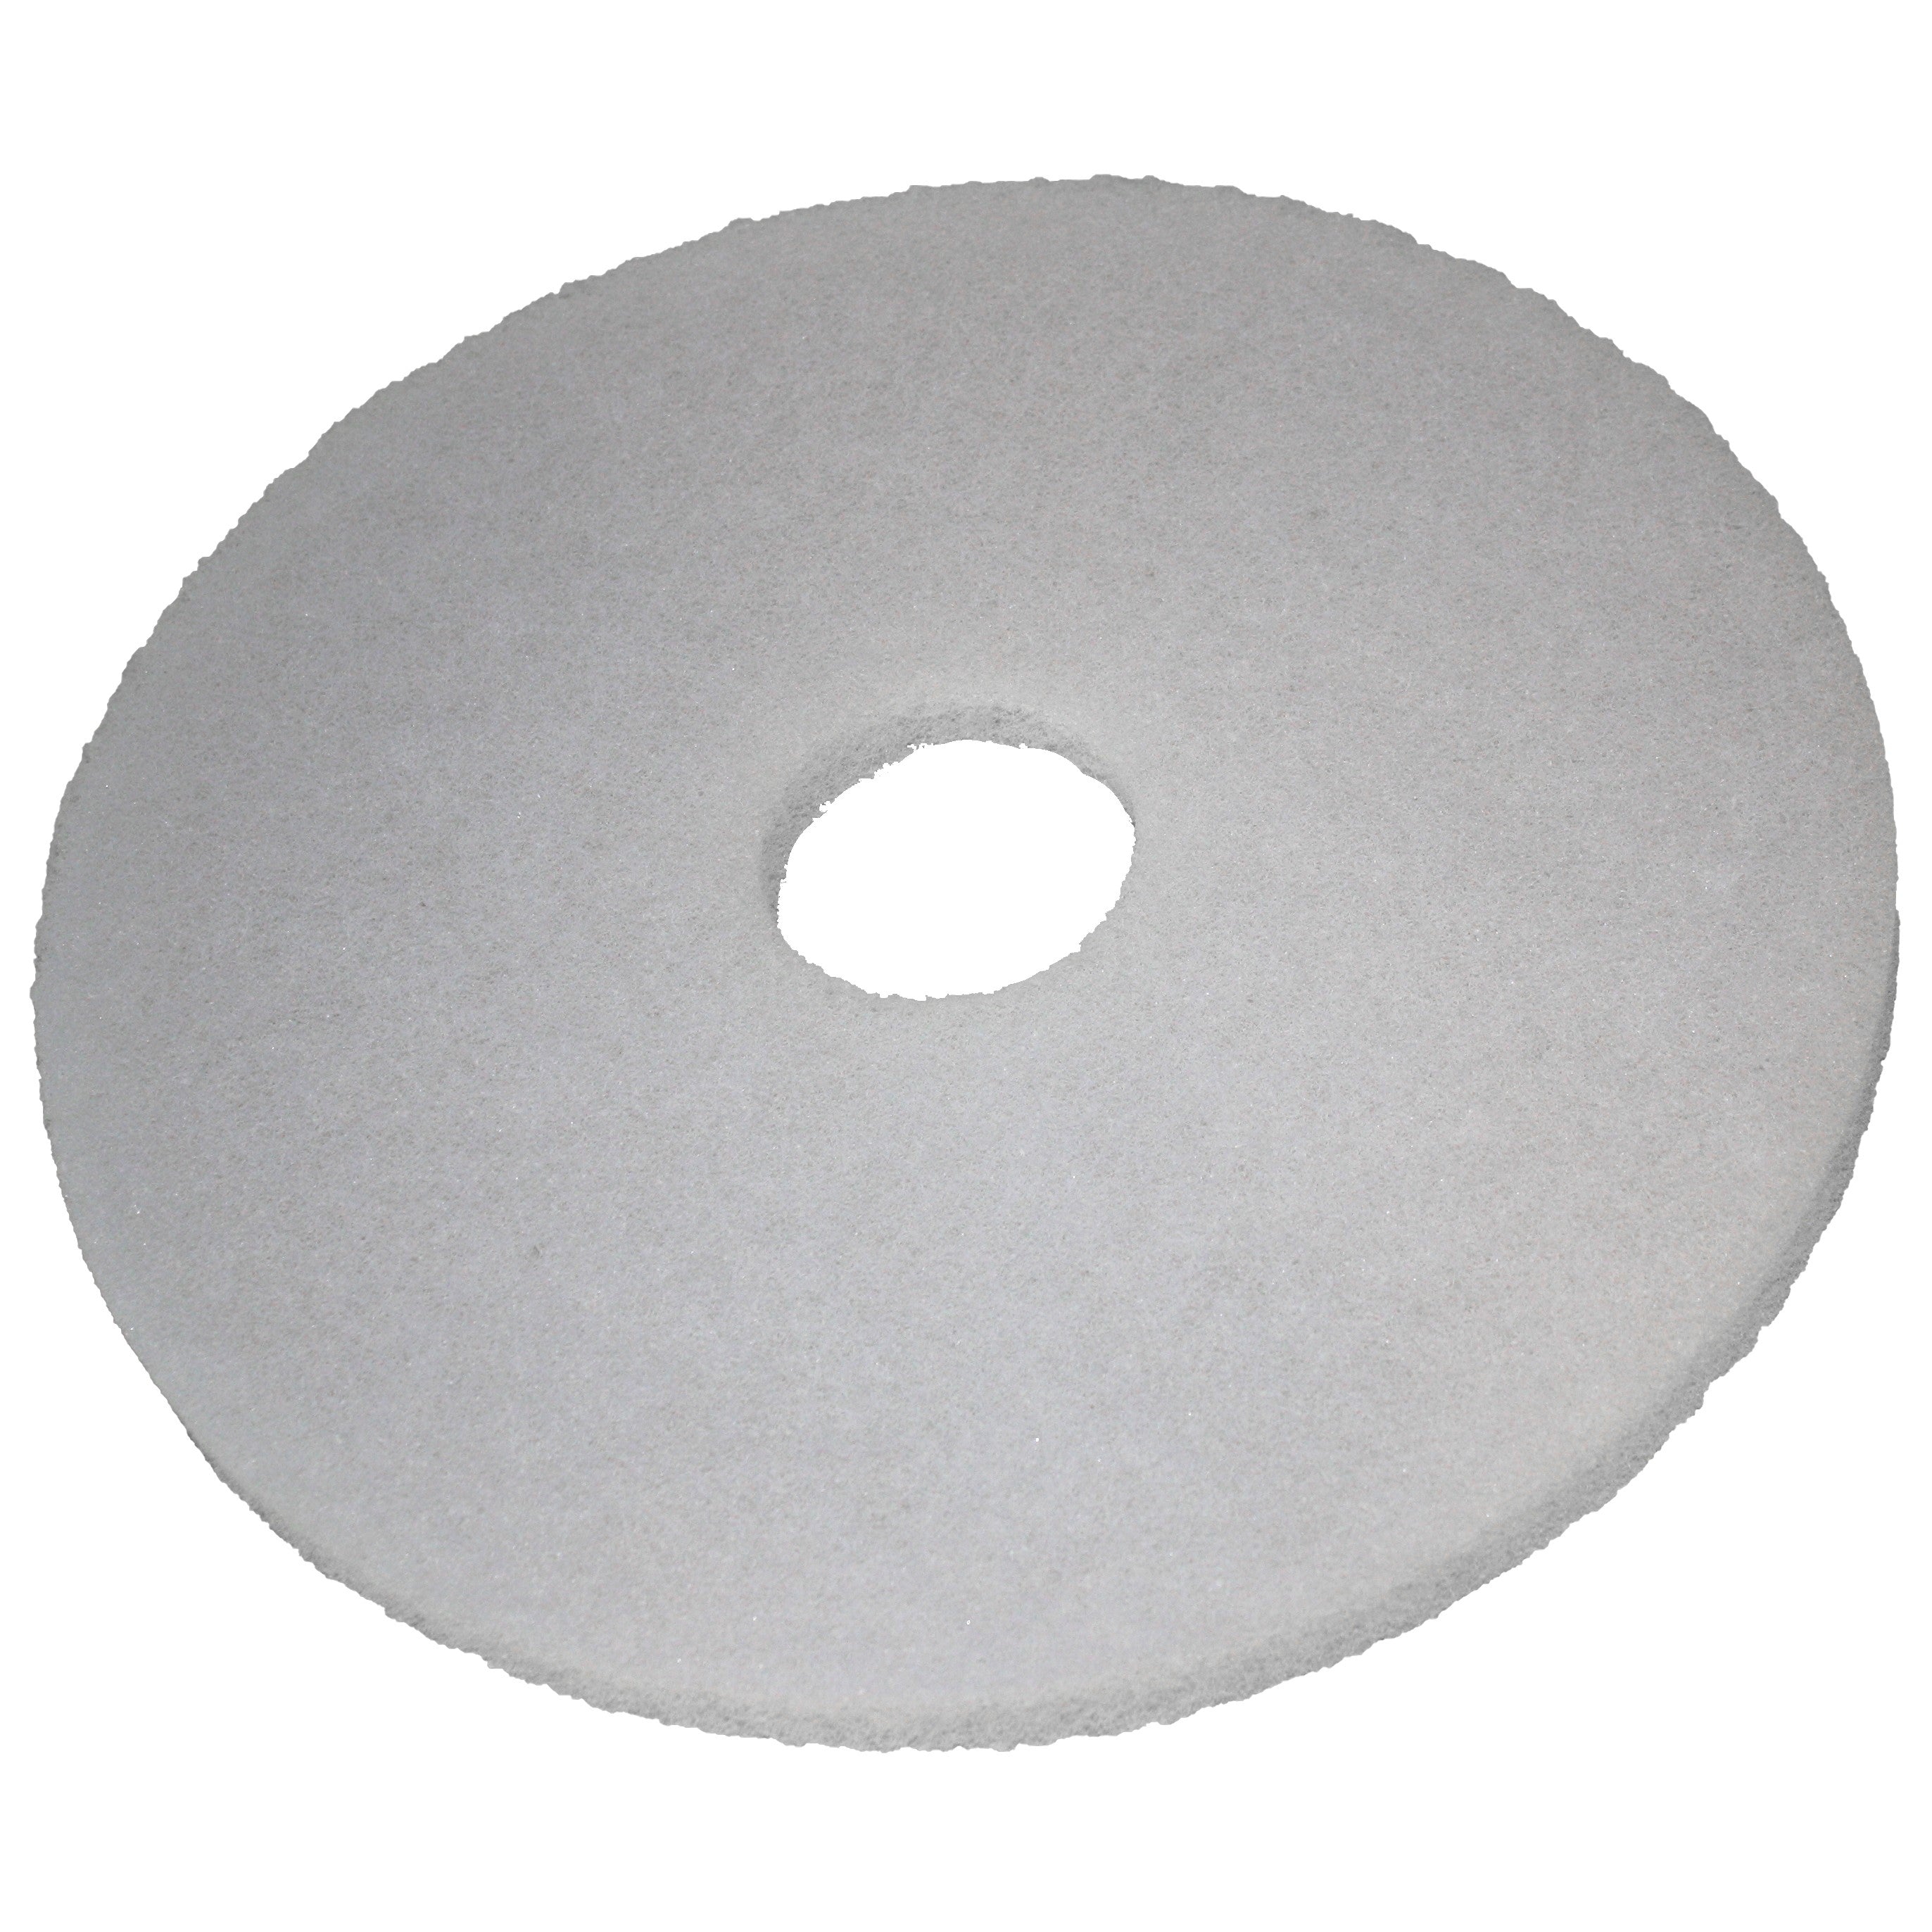 Pad blanc, Ø 280 mm, polyester